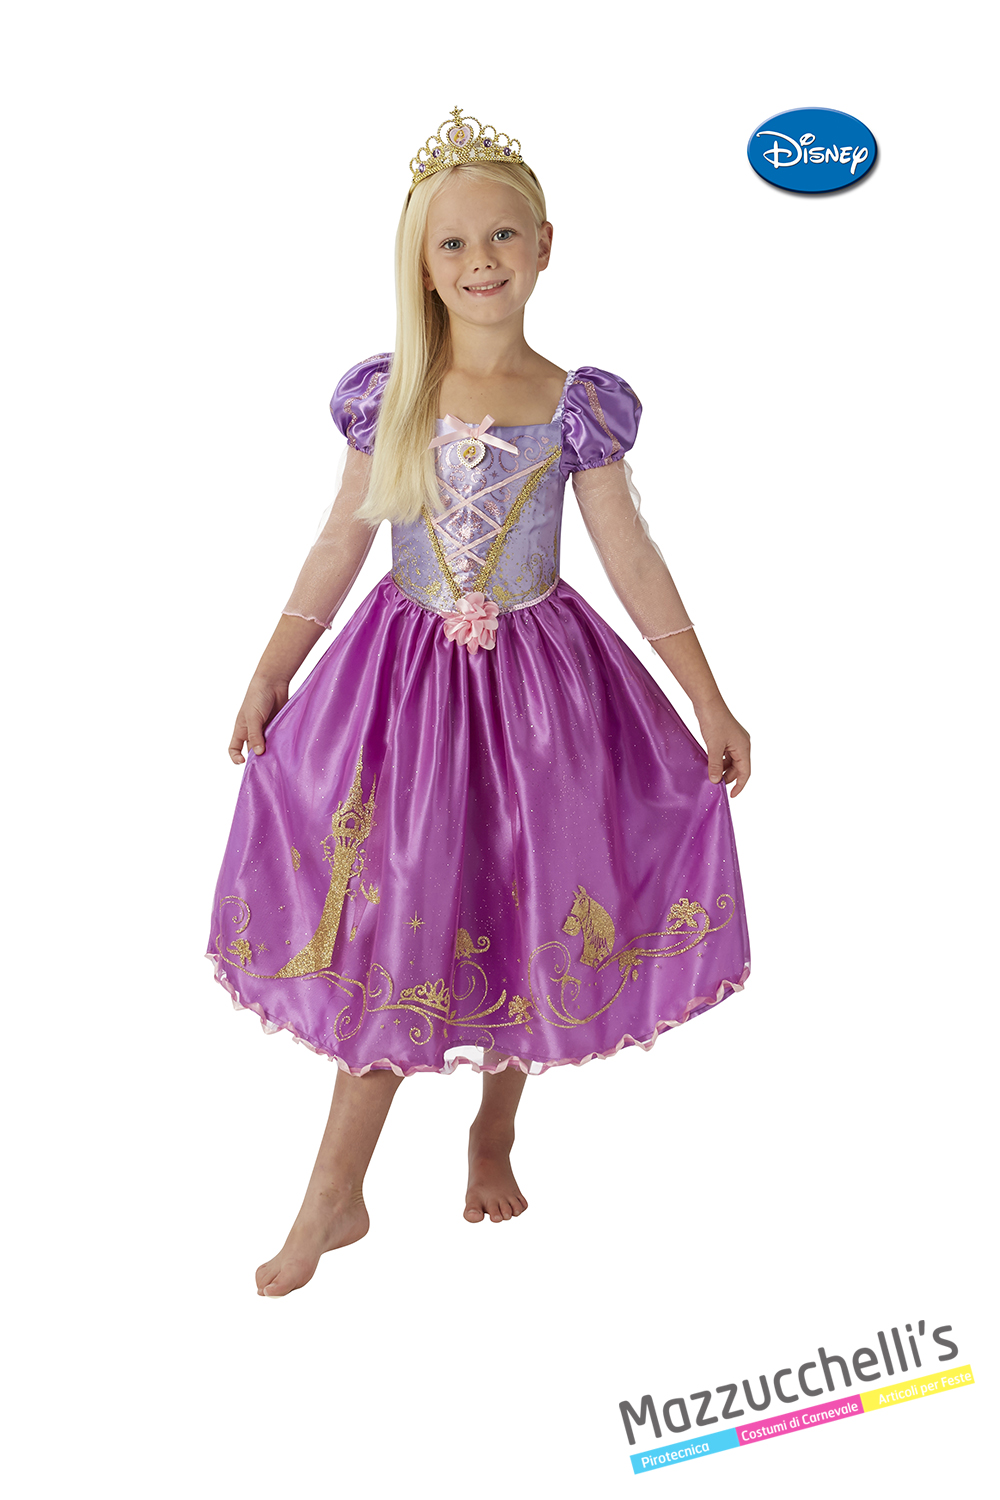 Costume Principessa Rapunzel in vendita a Samarate Varese da Mazzucchellis